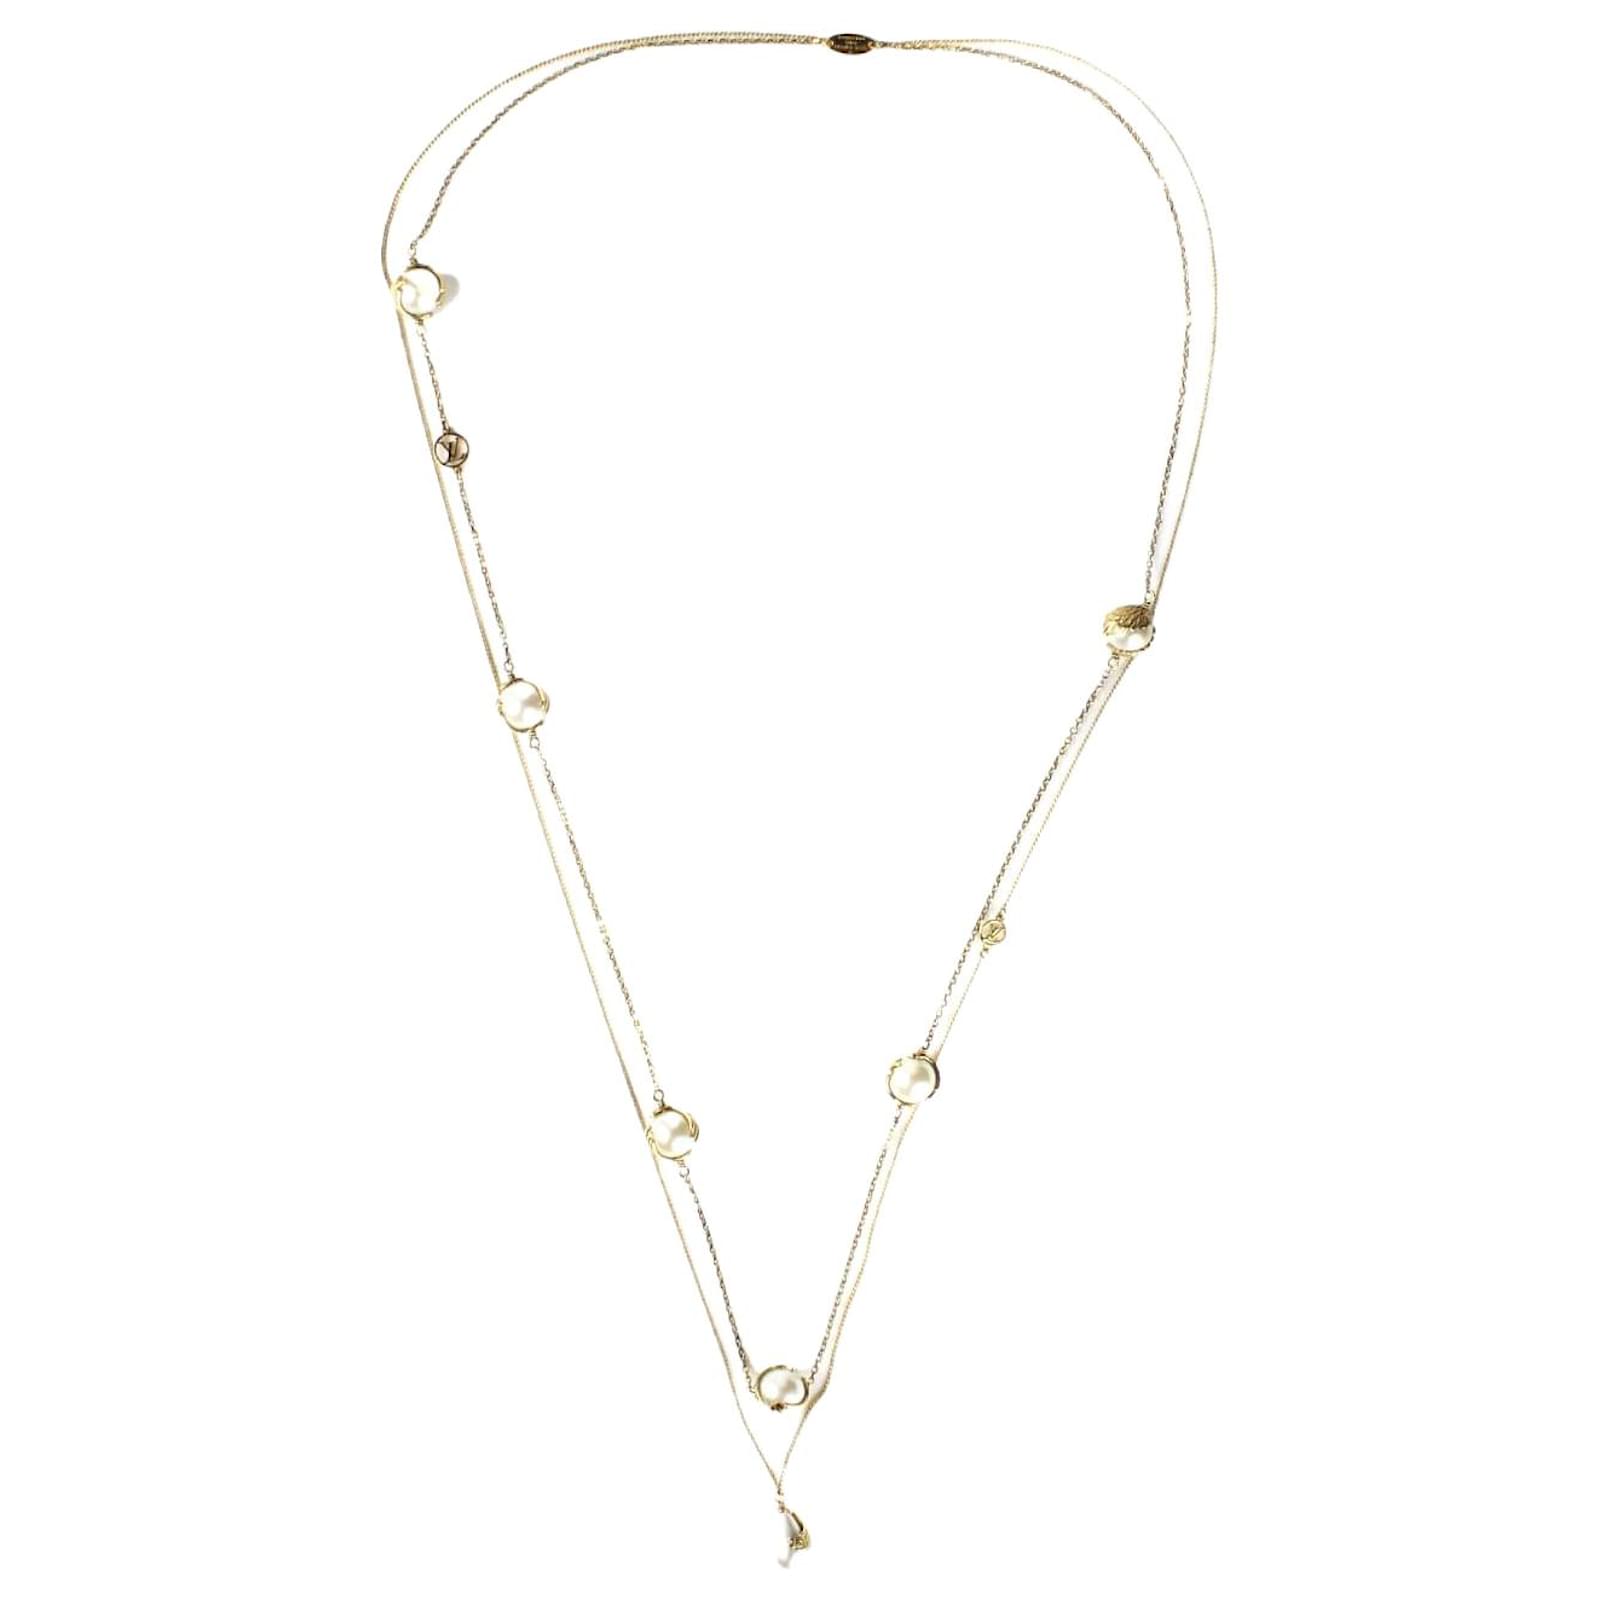 Long Louis Vuitton necklace